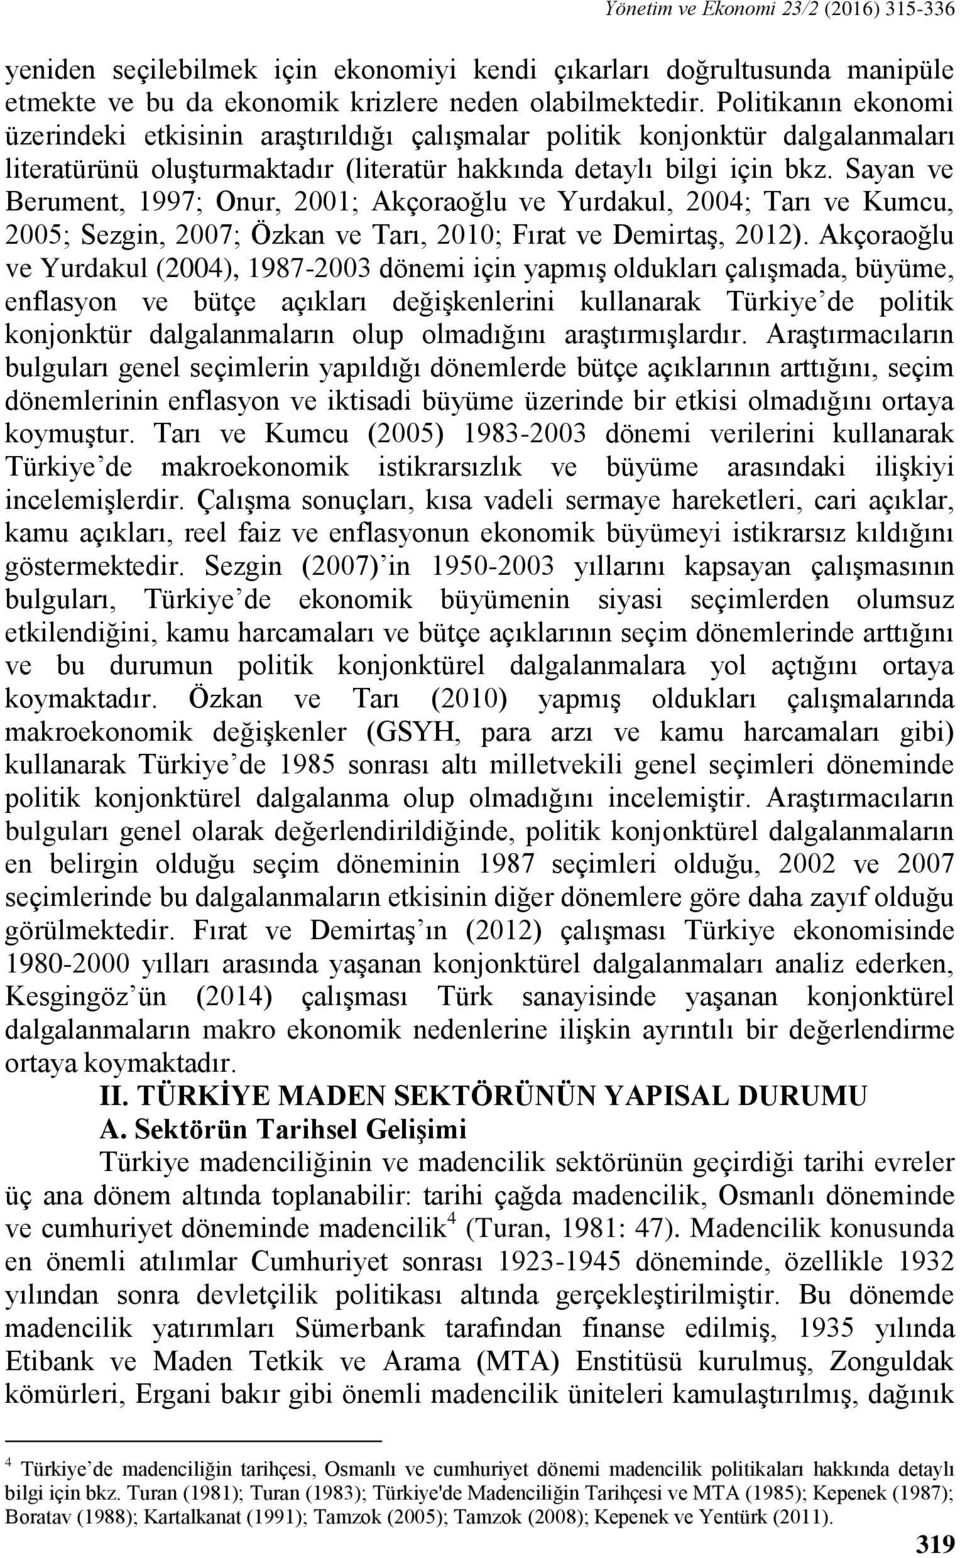 Sayan ve Berument, 1997; Onur, 2001; Akçoraoğlu ve Yurdakul, 2004; Tarı ve Kumcu, 2005; Sezgin, 2007; Özkan ve Tarı, 2010; Fırat ve Demirtaş, 2012).